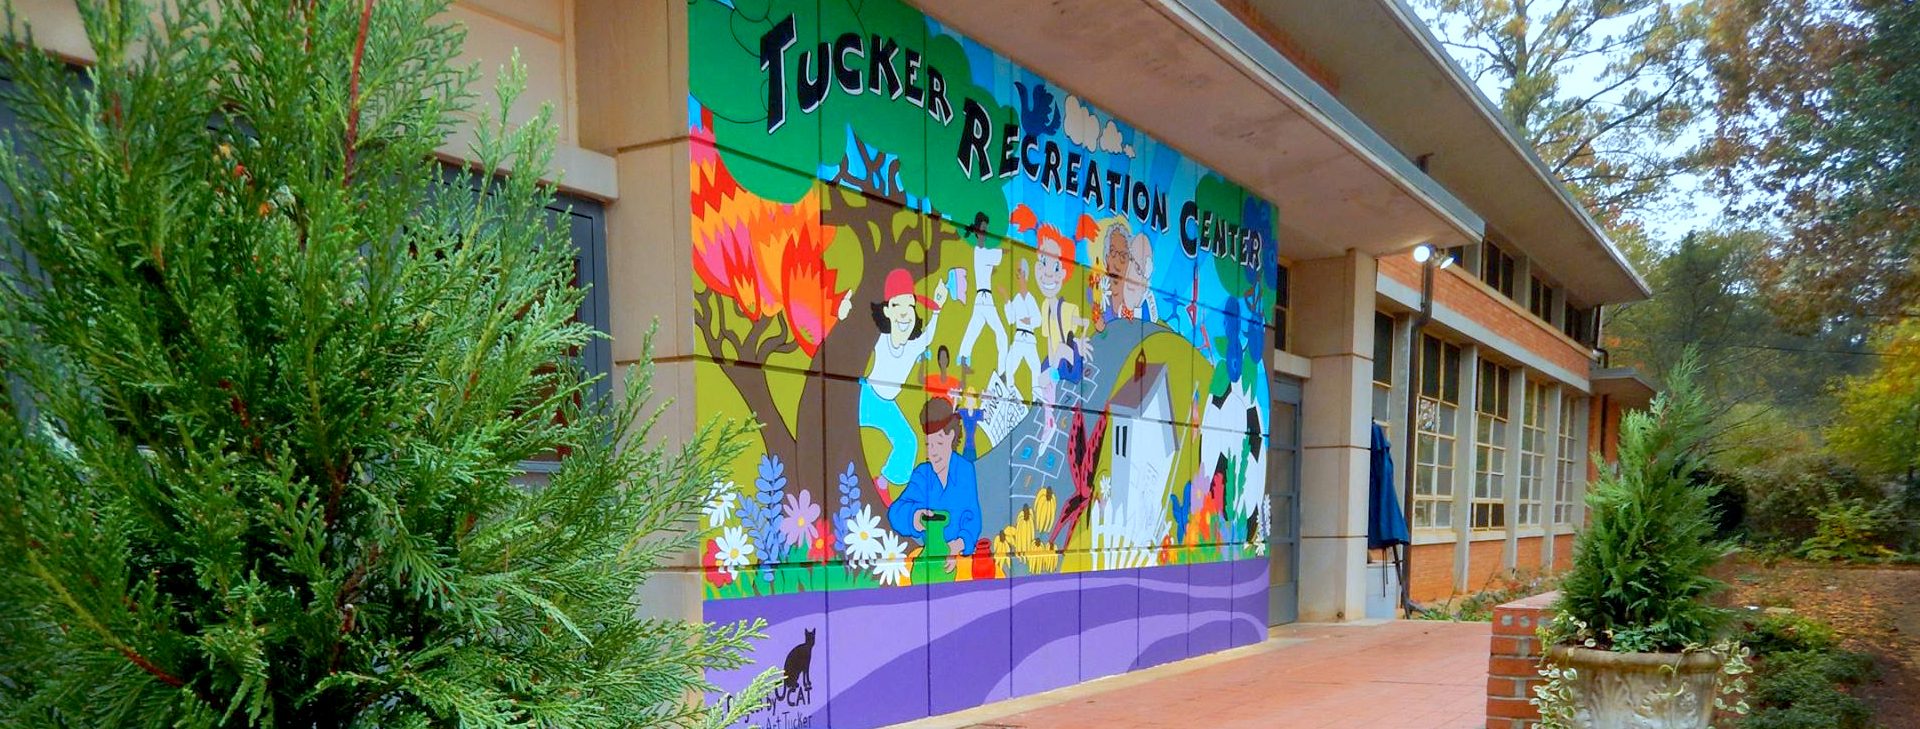 Tucker Rec Center